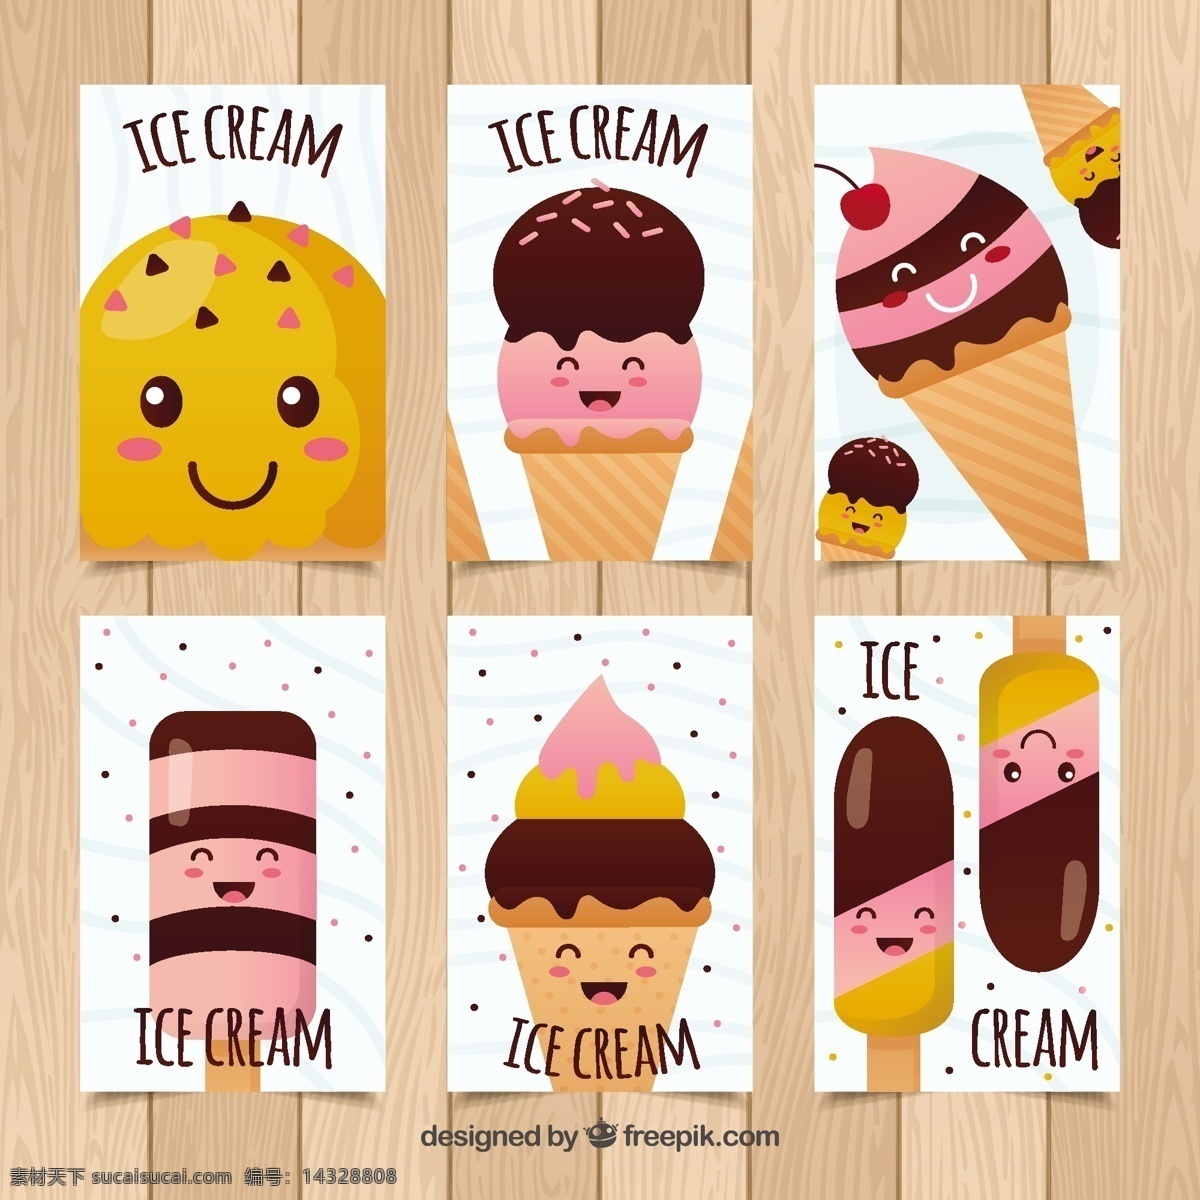 可爱 冰淇淋 人物 装饰 卡片 分类 食品 夏季 模板 颜色 平板 冰 甜 平面设计 娱乐 甜点 滑稽 奶油 吃